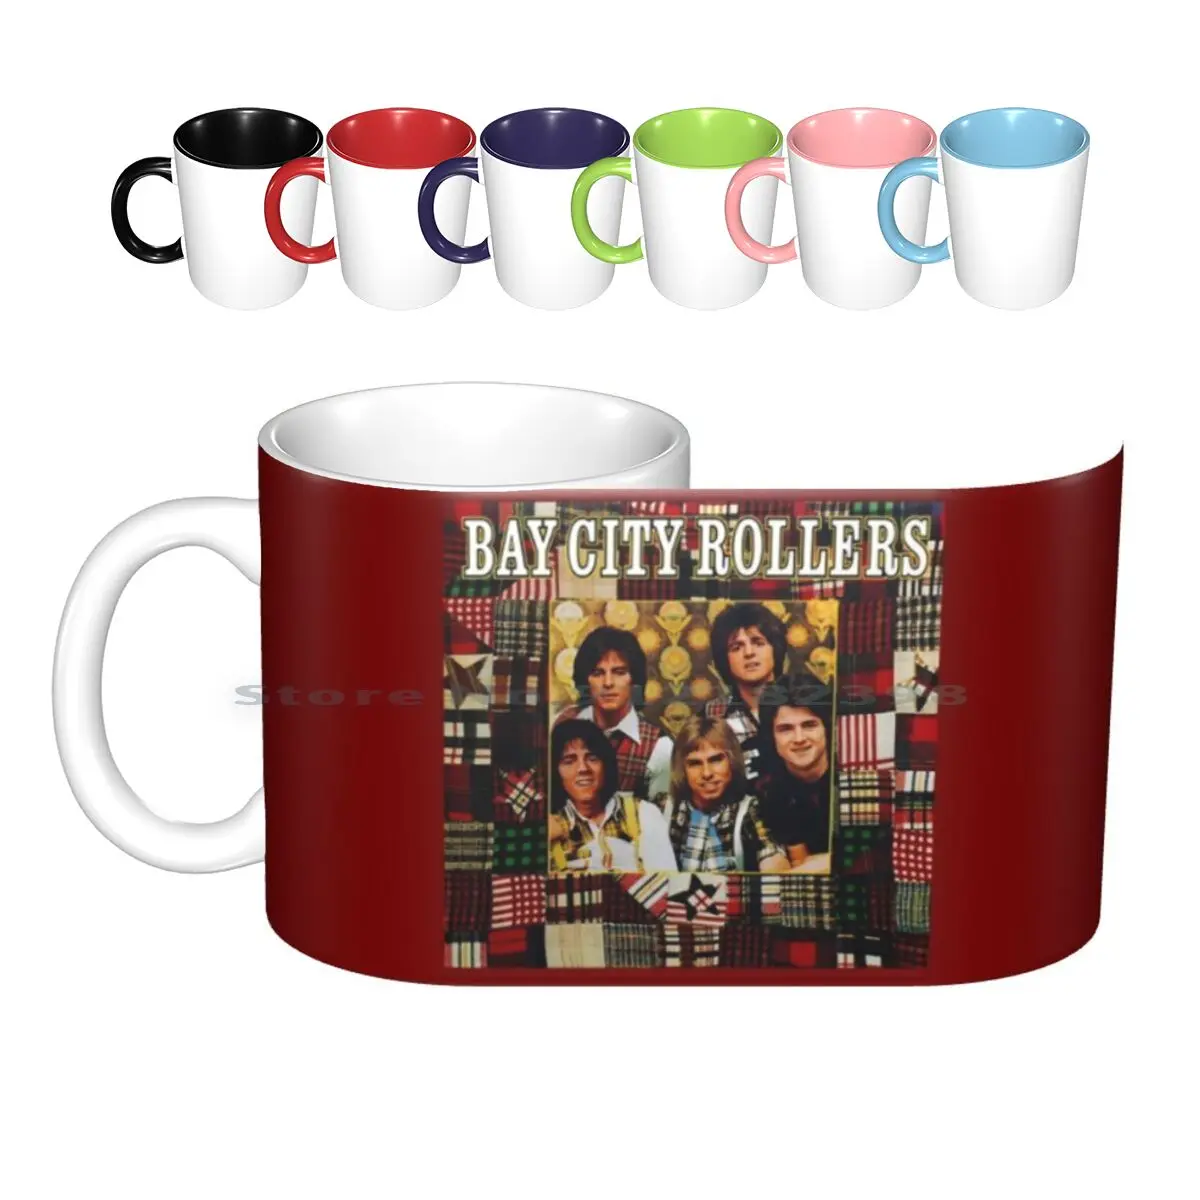 

Керамические кружки с роликами Bay City, кофейные чашки, кружка для молока, чая, роллеры для отдыха в городе, поп 1970s 70s, для мальчиков, для суббота...